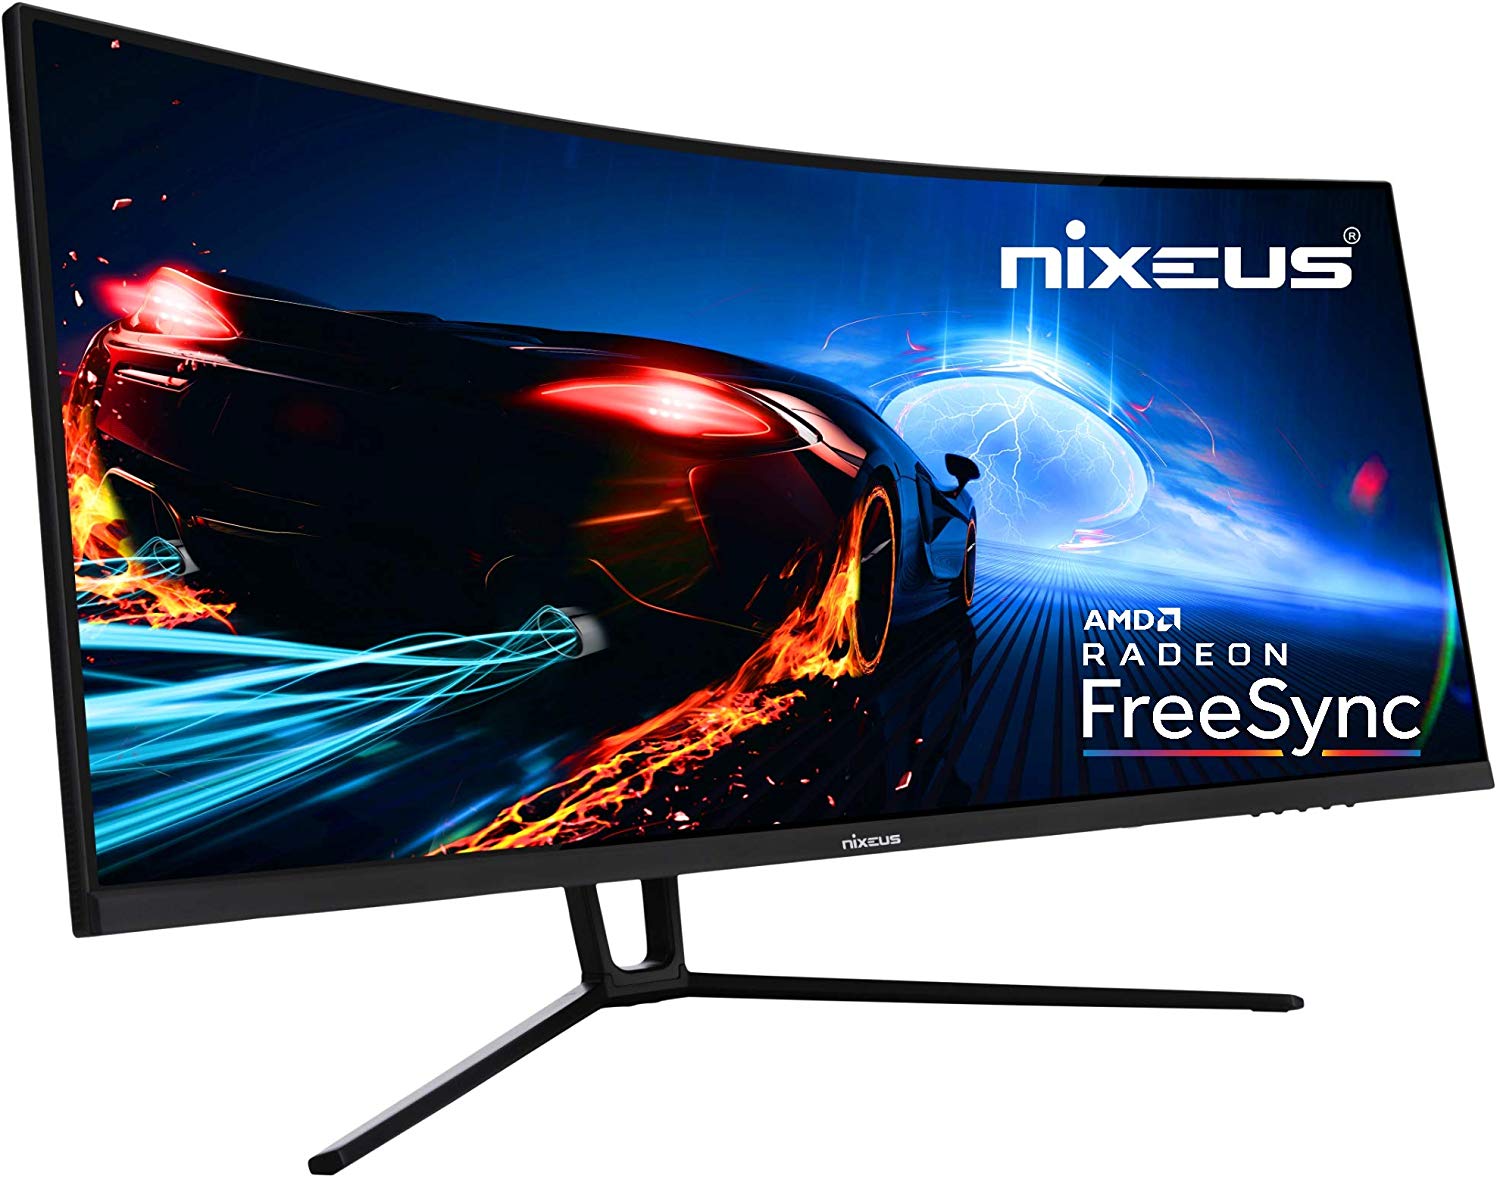 Nixeus EDG 34â€ Ultrawide 3440 x 1440 AMD Radeon FreeSync Certified 144Hz 1500R Curved Gaming Monitor with Tilt Only Stand (NX-EDG34S) - image 1 of 4